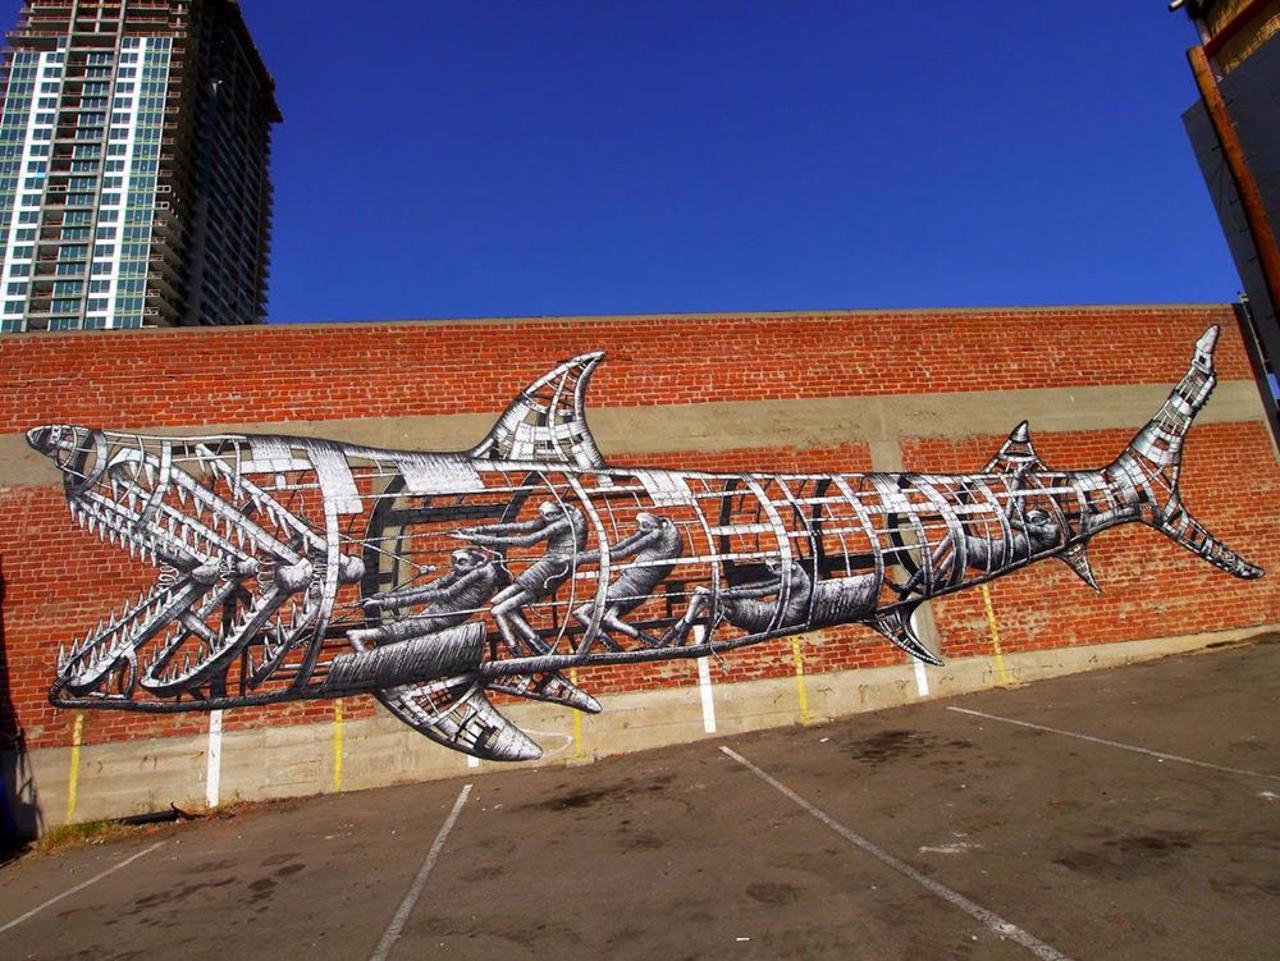 Coolest mechanical shark mural. Check out more: http://buff.ly/1xsCQDL #graffiti #urbanart #artist http://t.co/ij6FLmVk94